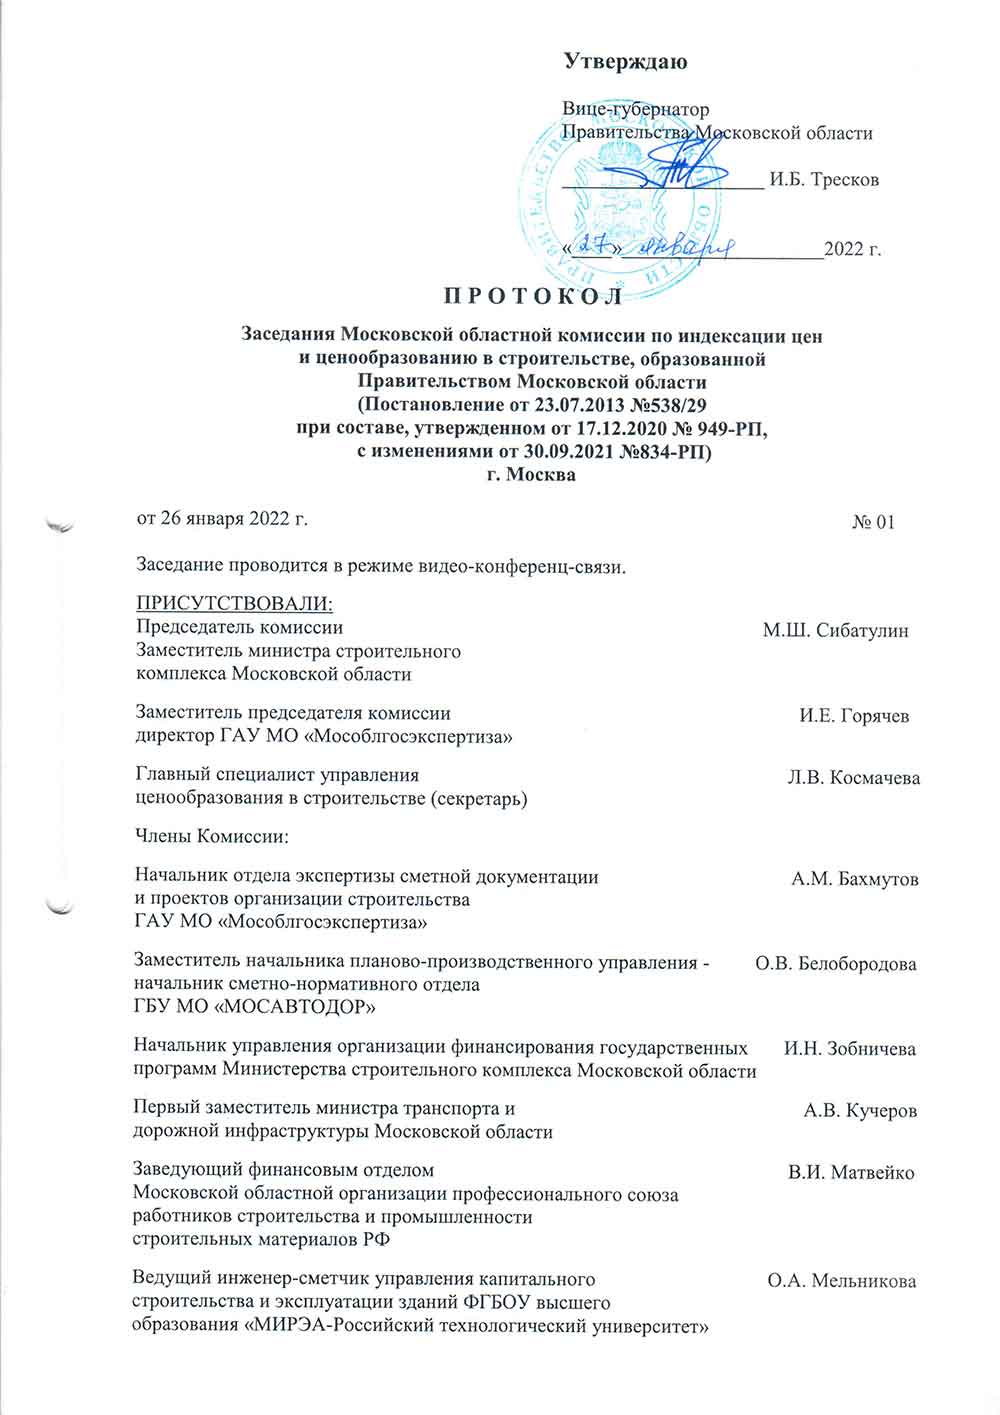 Протокол Мособлгосэкспертизы №1 от 26.01.2022 года